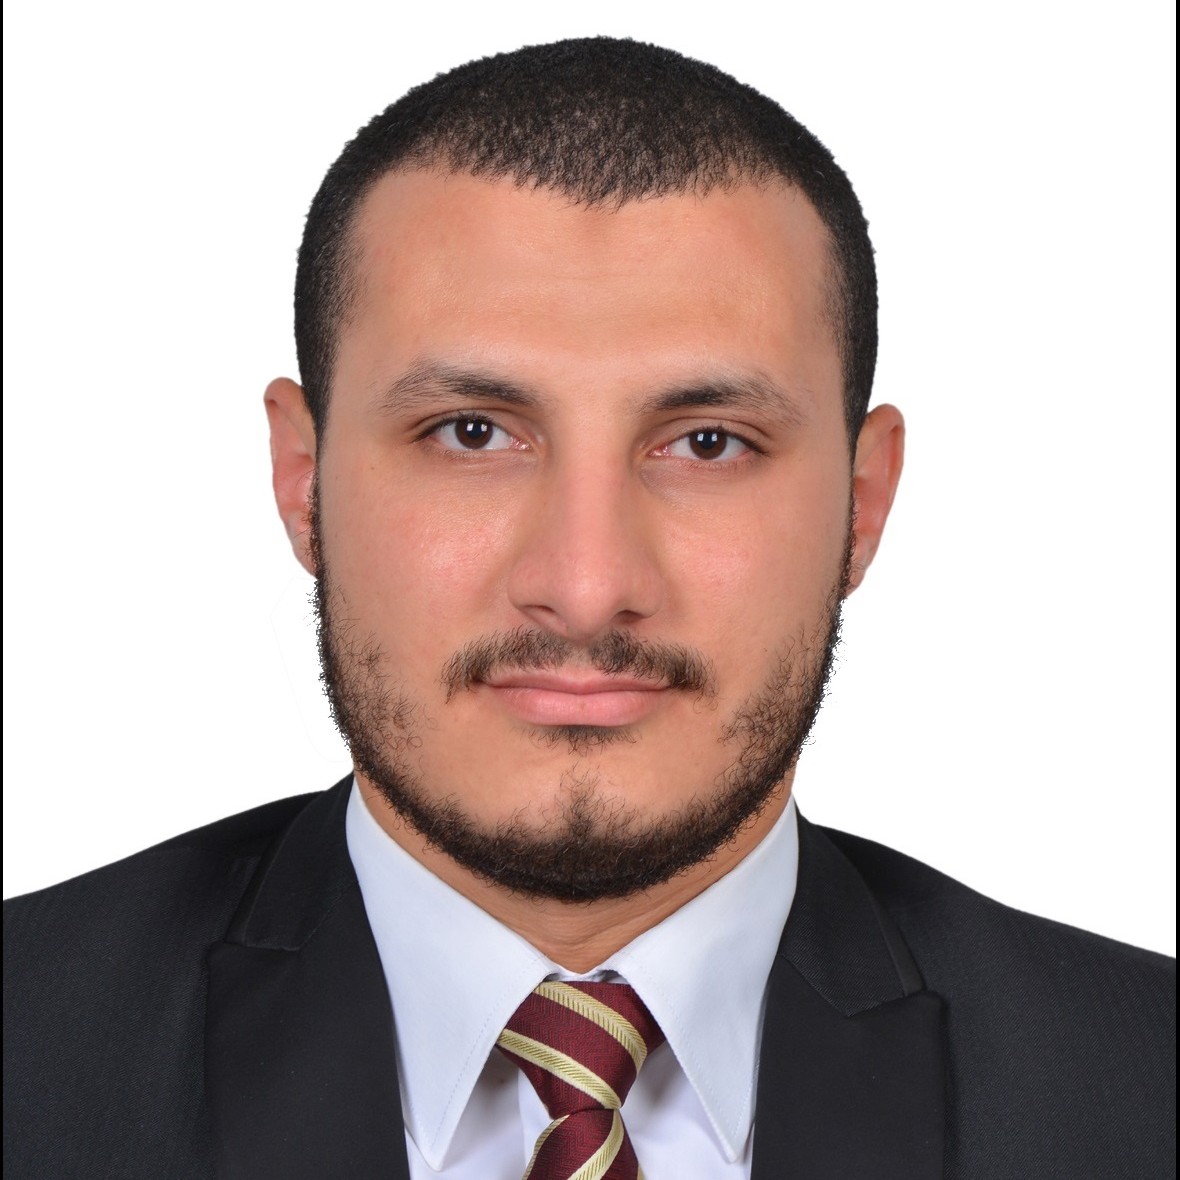 Dr. Mohamed Mansi